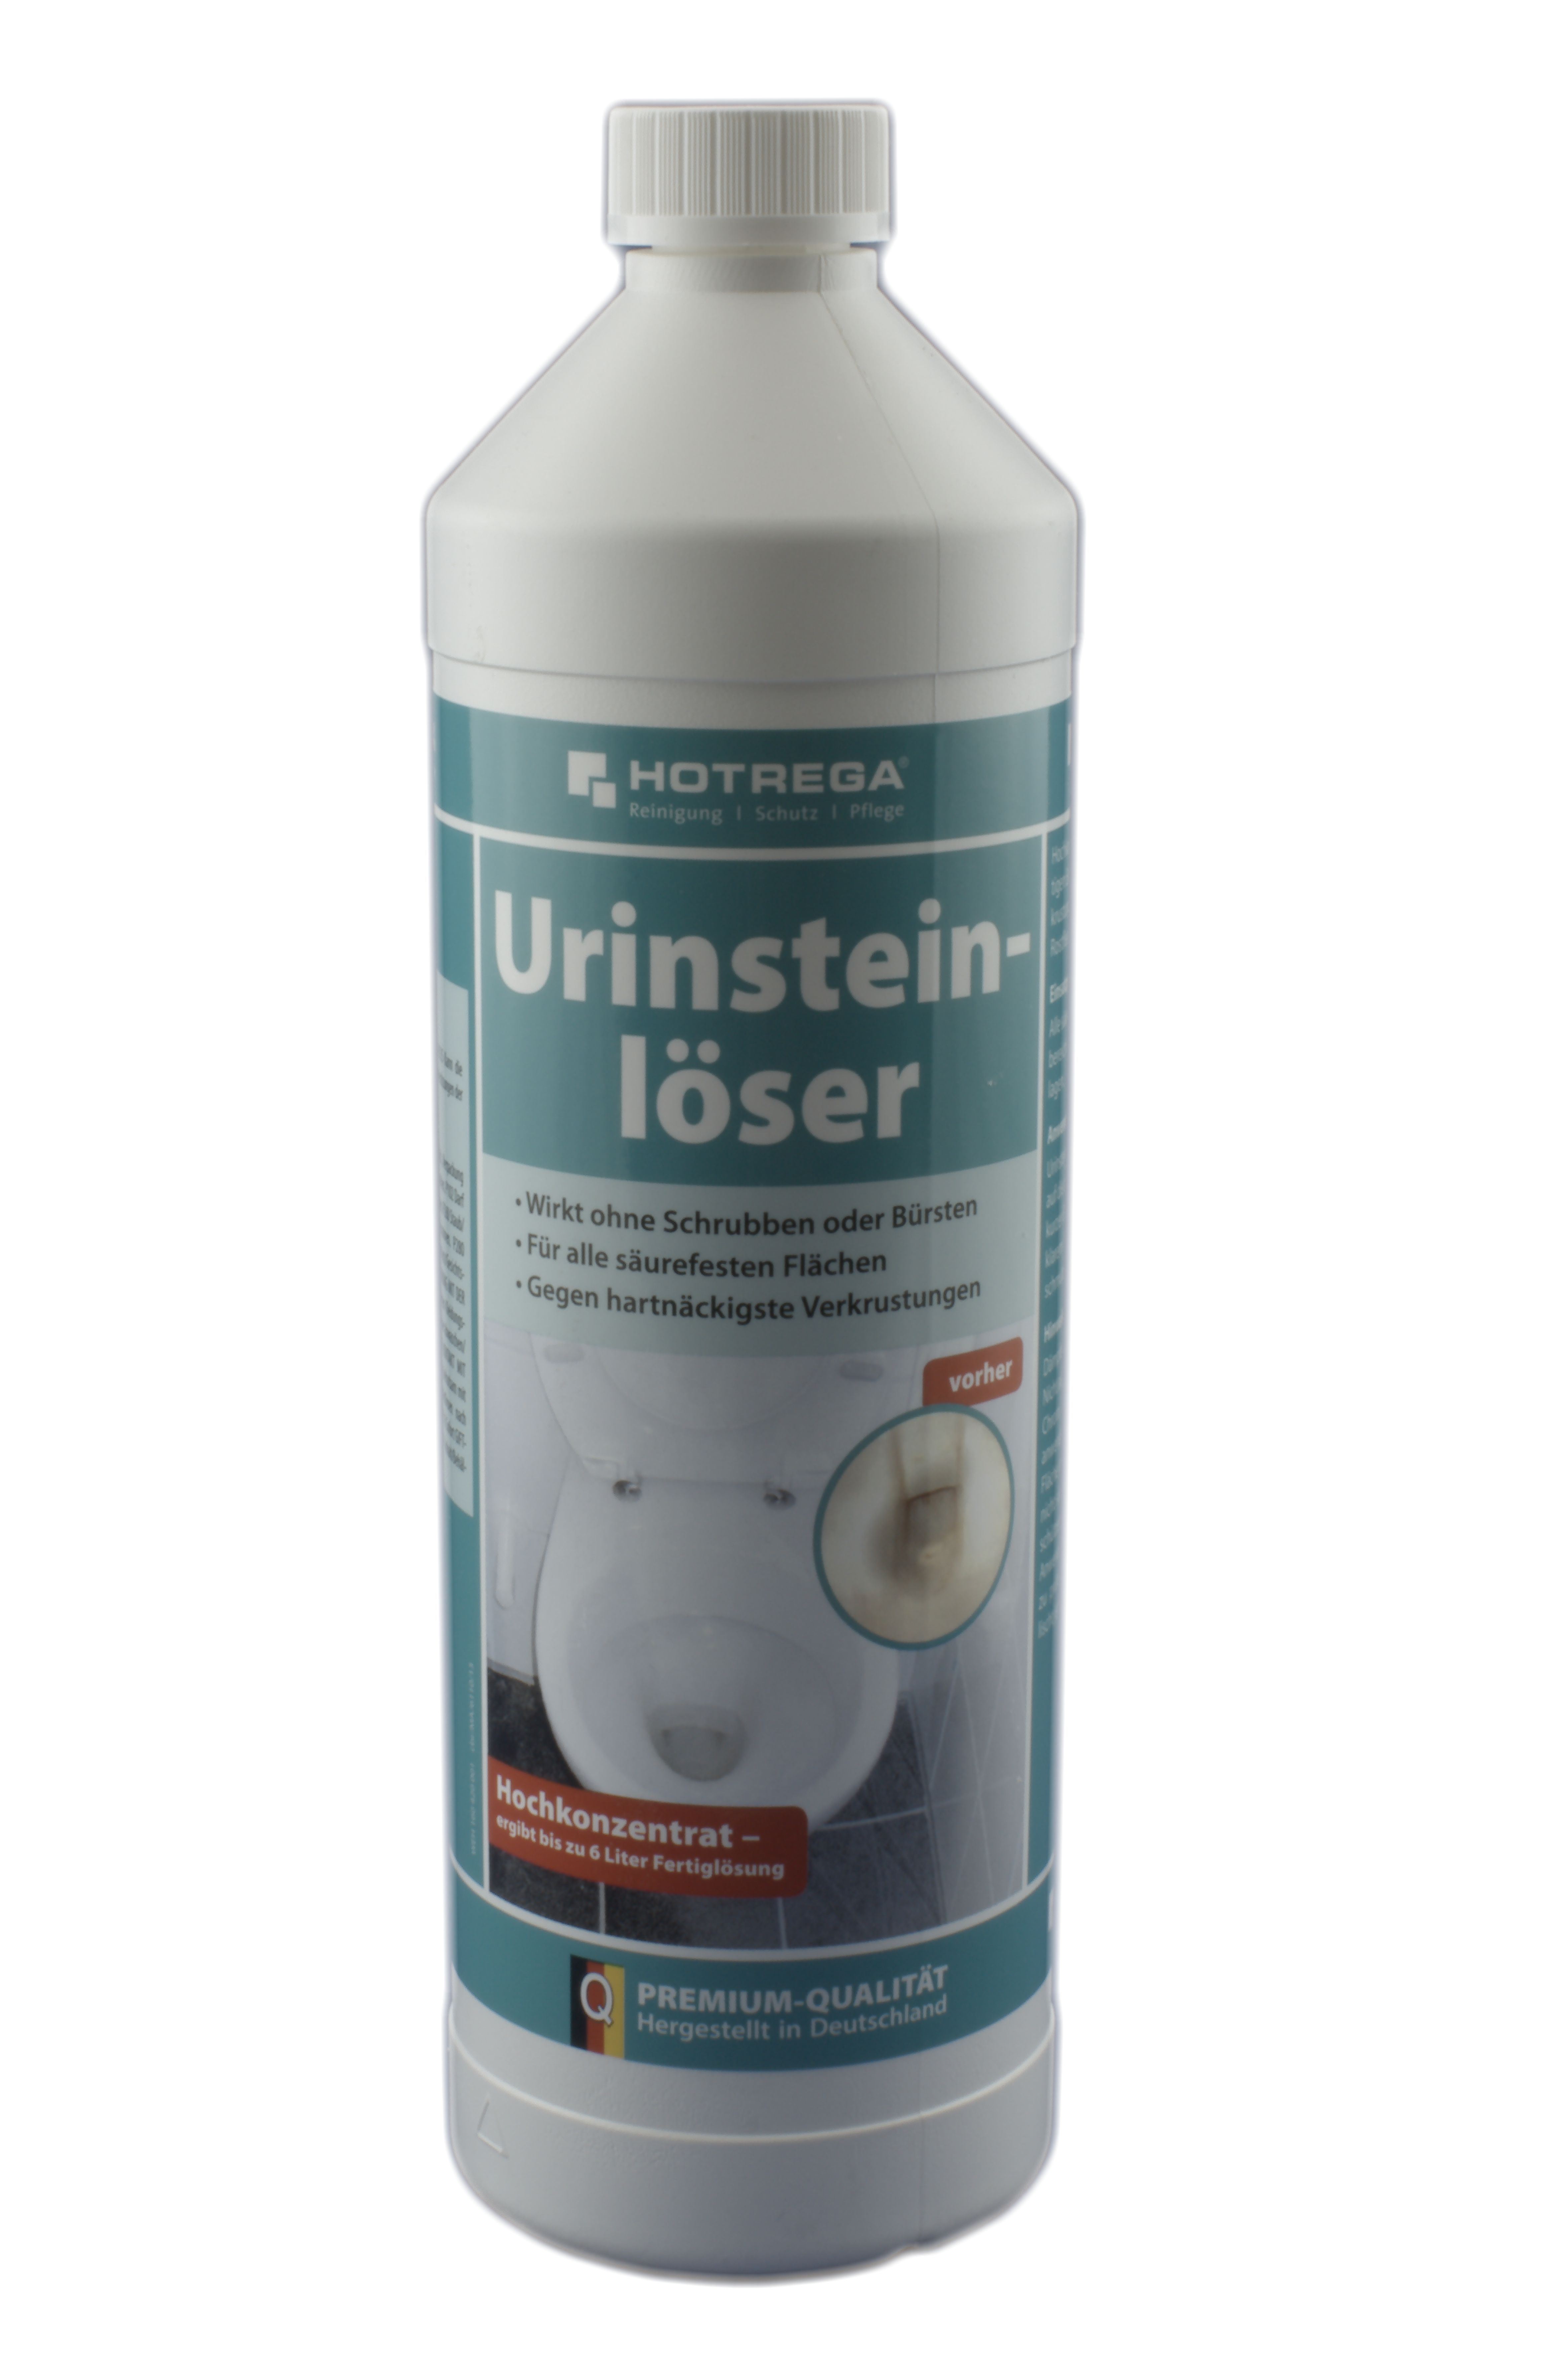 Hotrega Urinsteinlöser  1 Liter (Konzentrat)